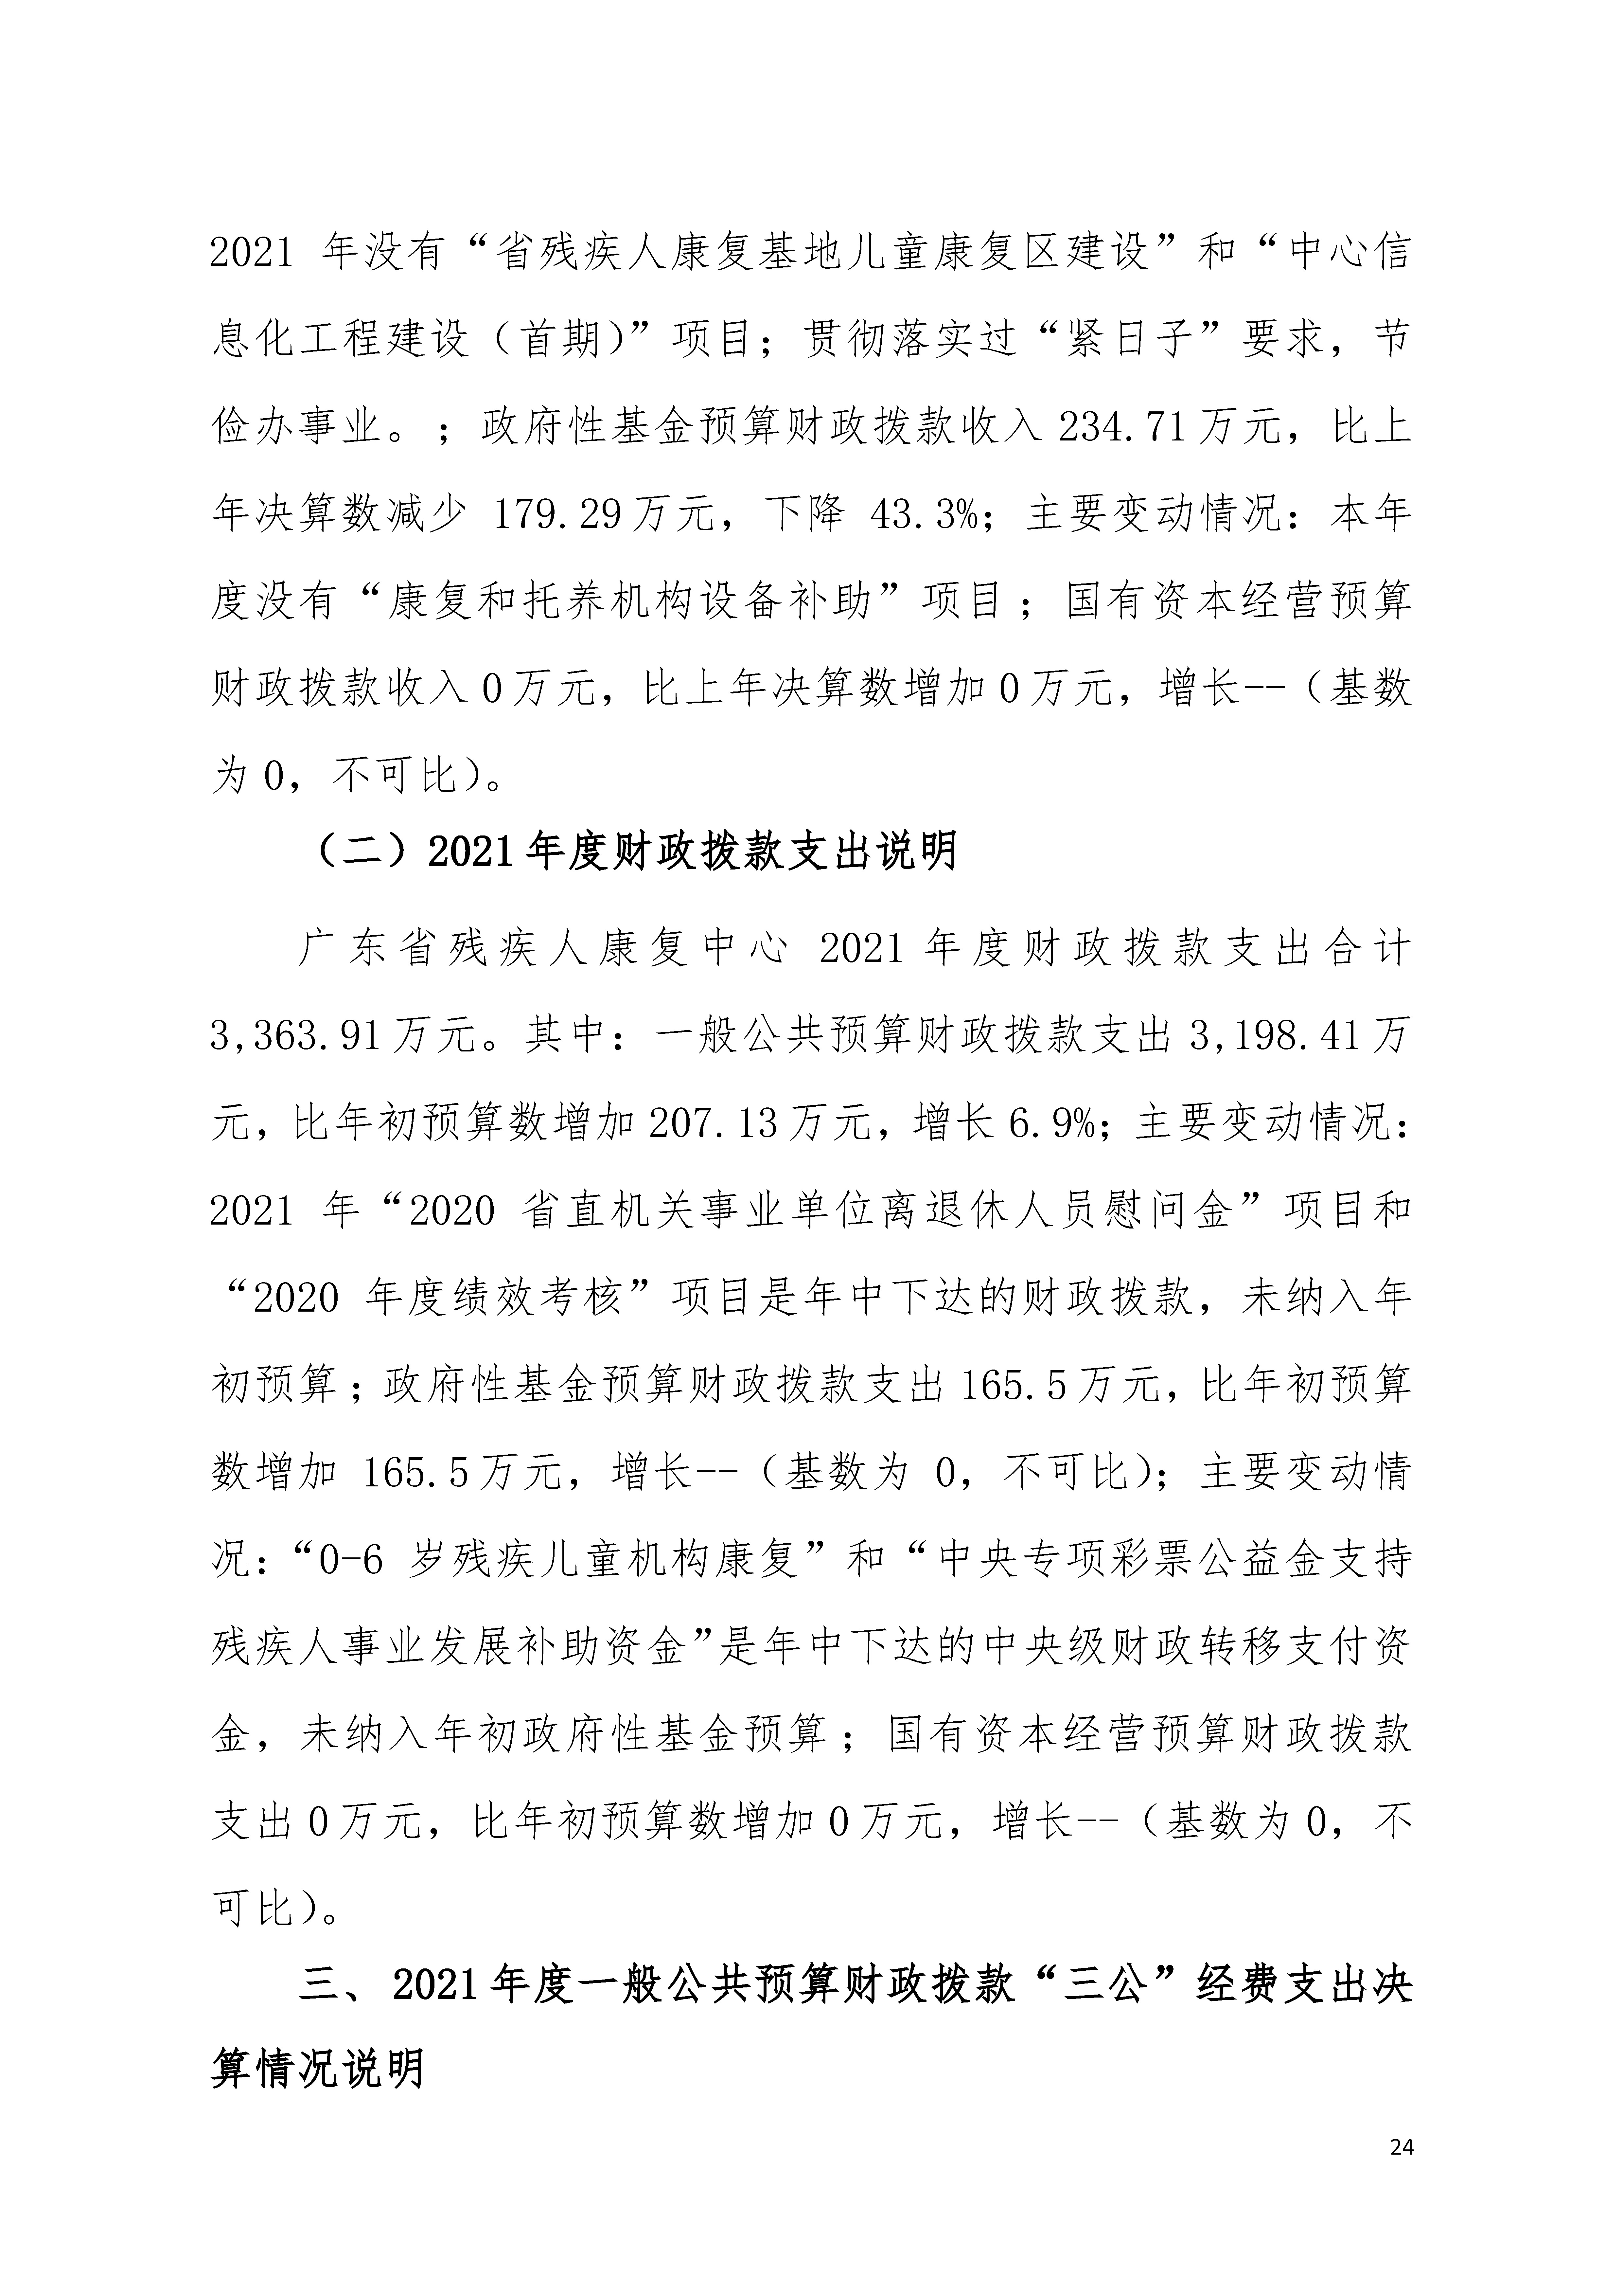 2021年广东省残疾人康复中心部门决算 0629_页面_24.jpg